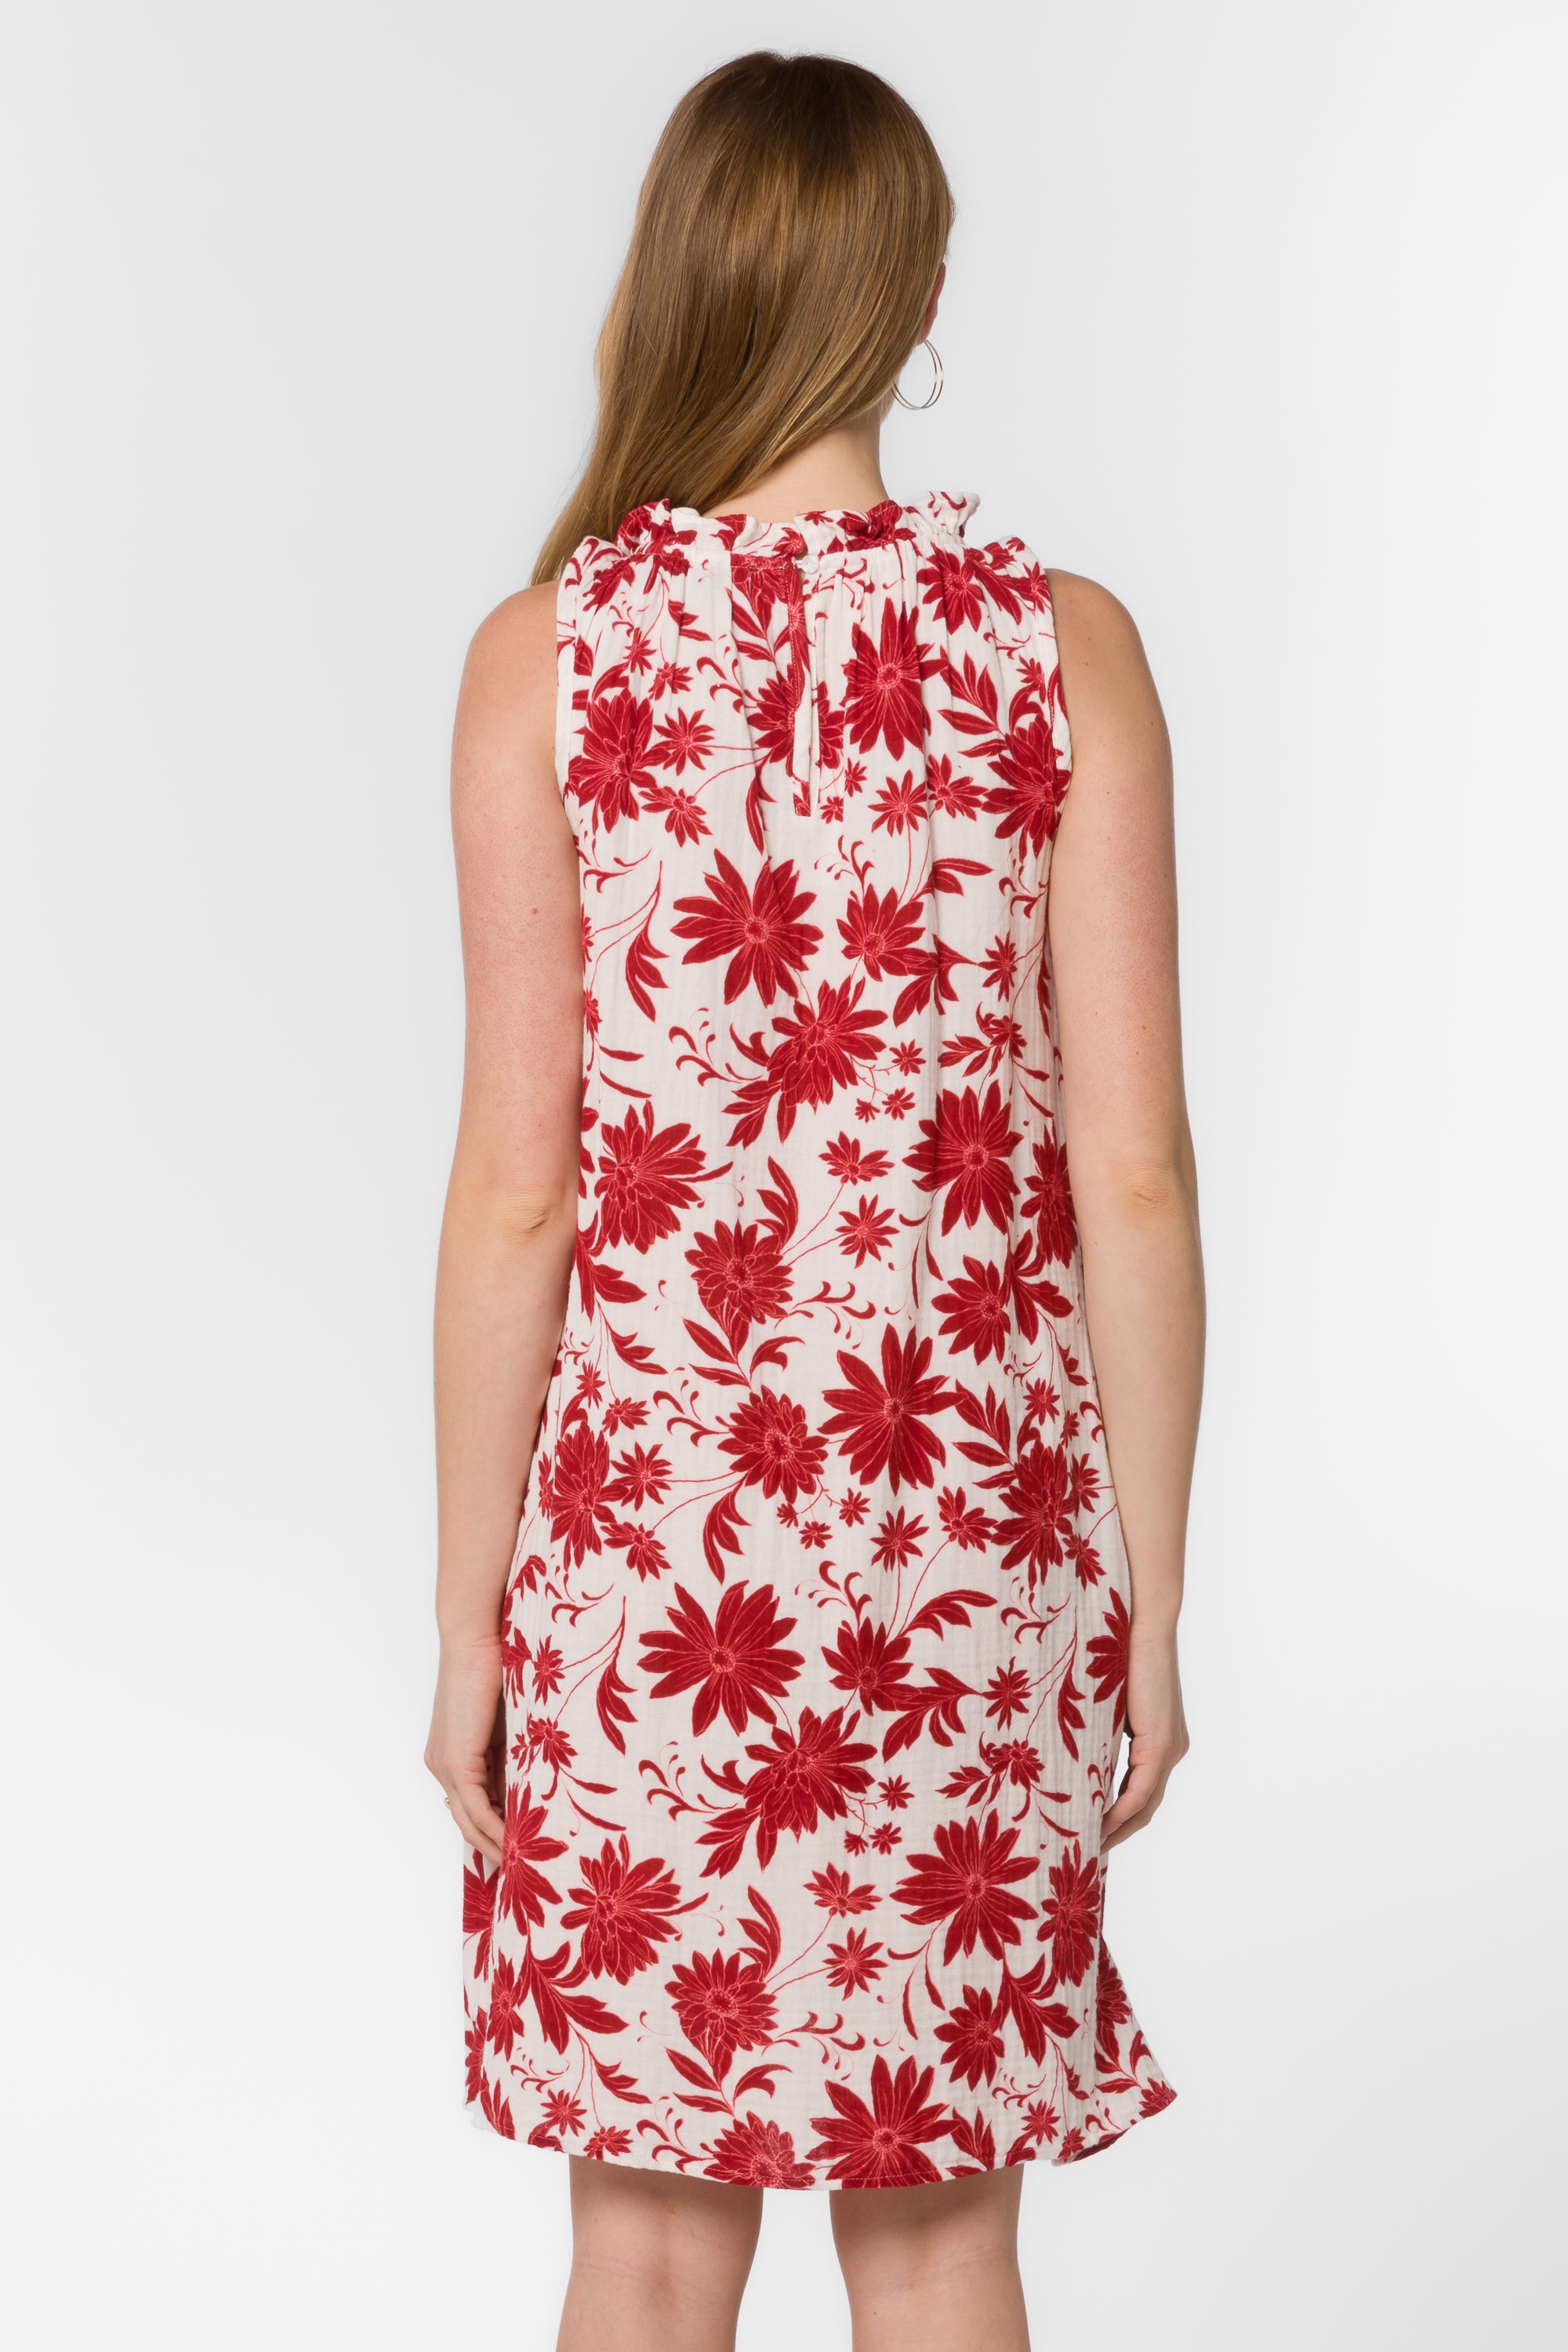 Glenda Red Floral Dress - Dresses - Velvet Heart Clothing